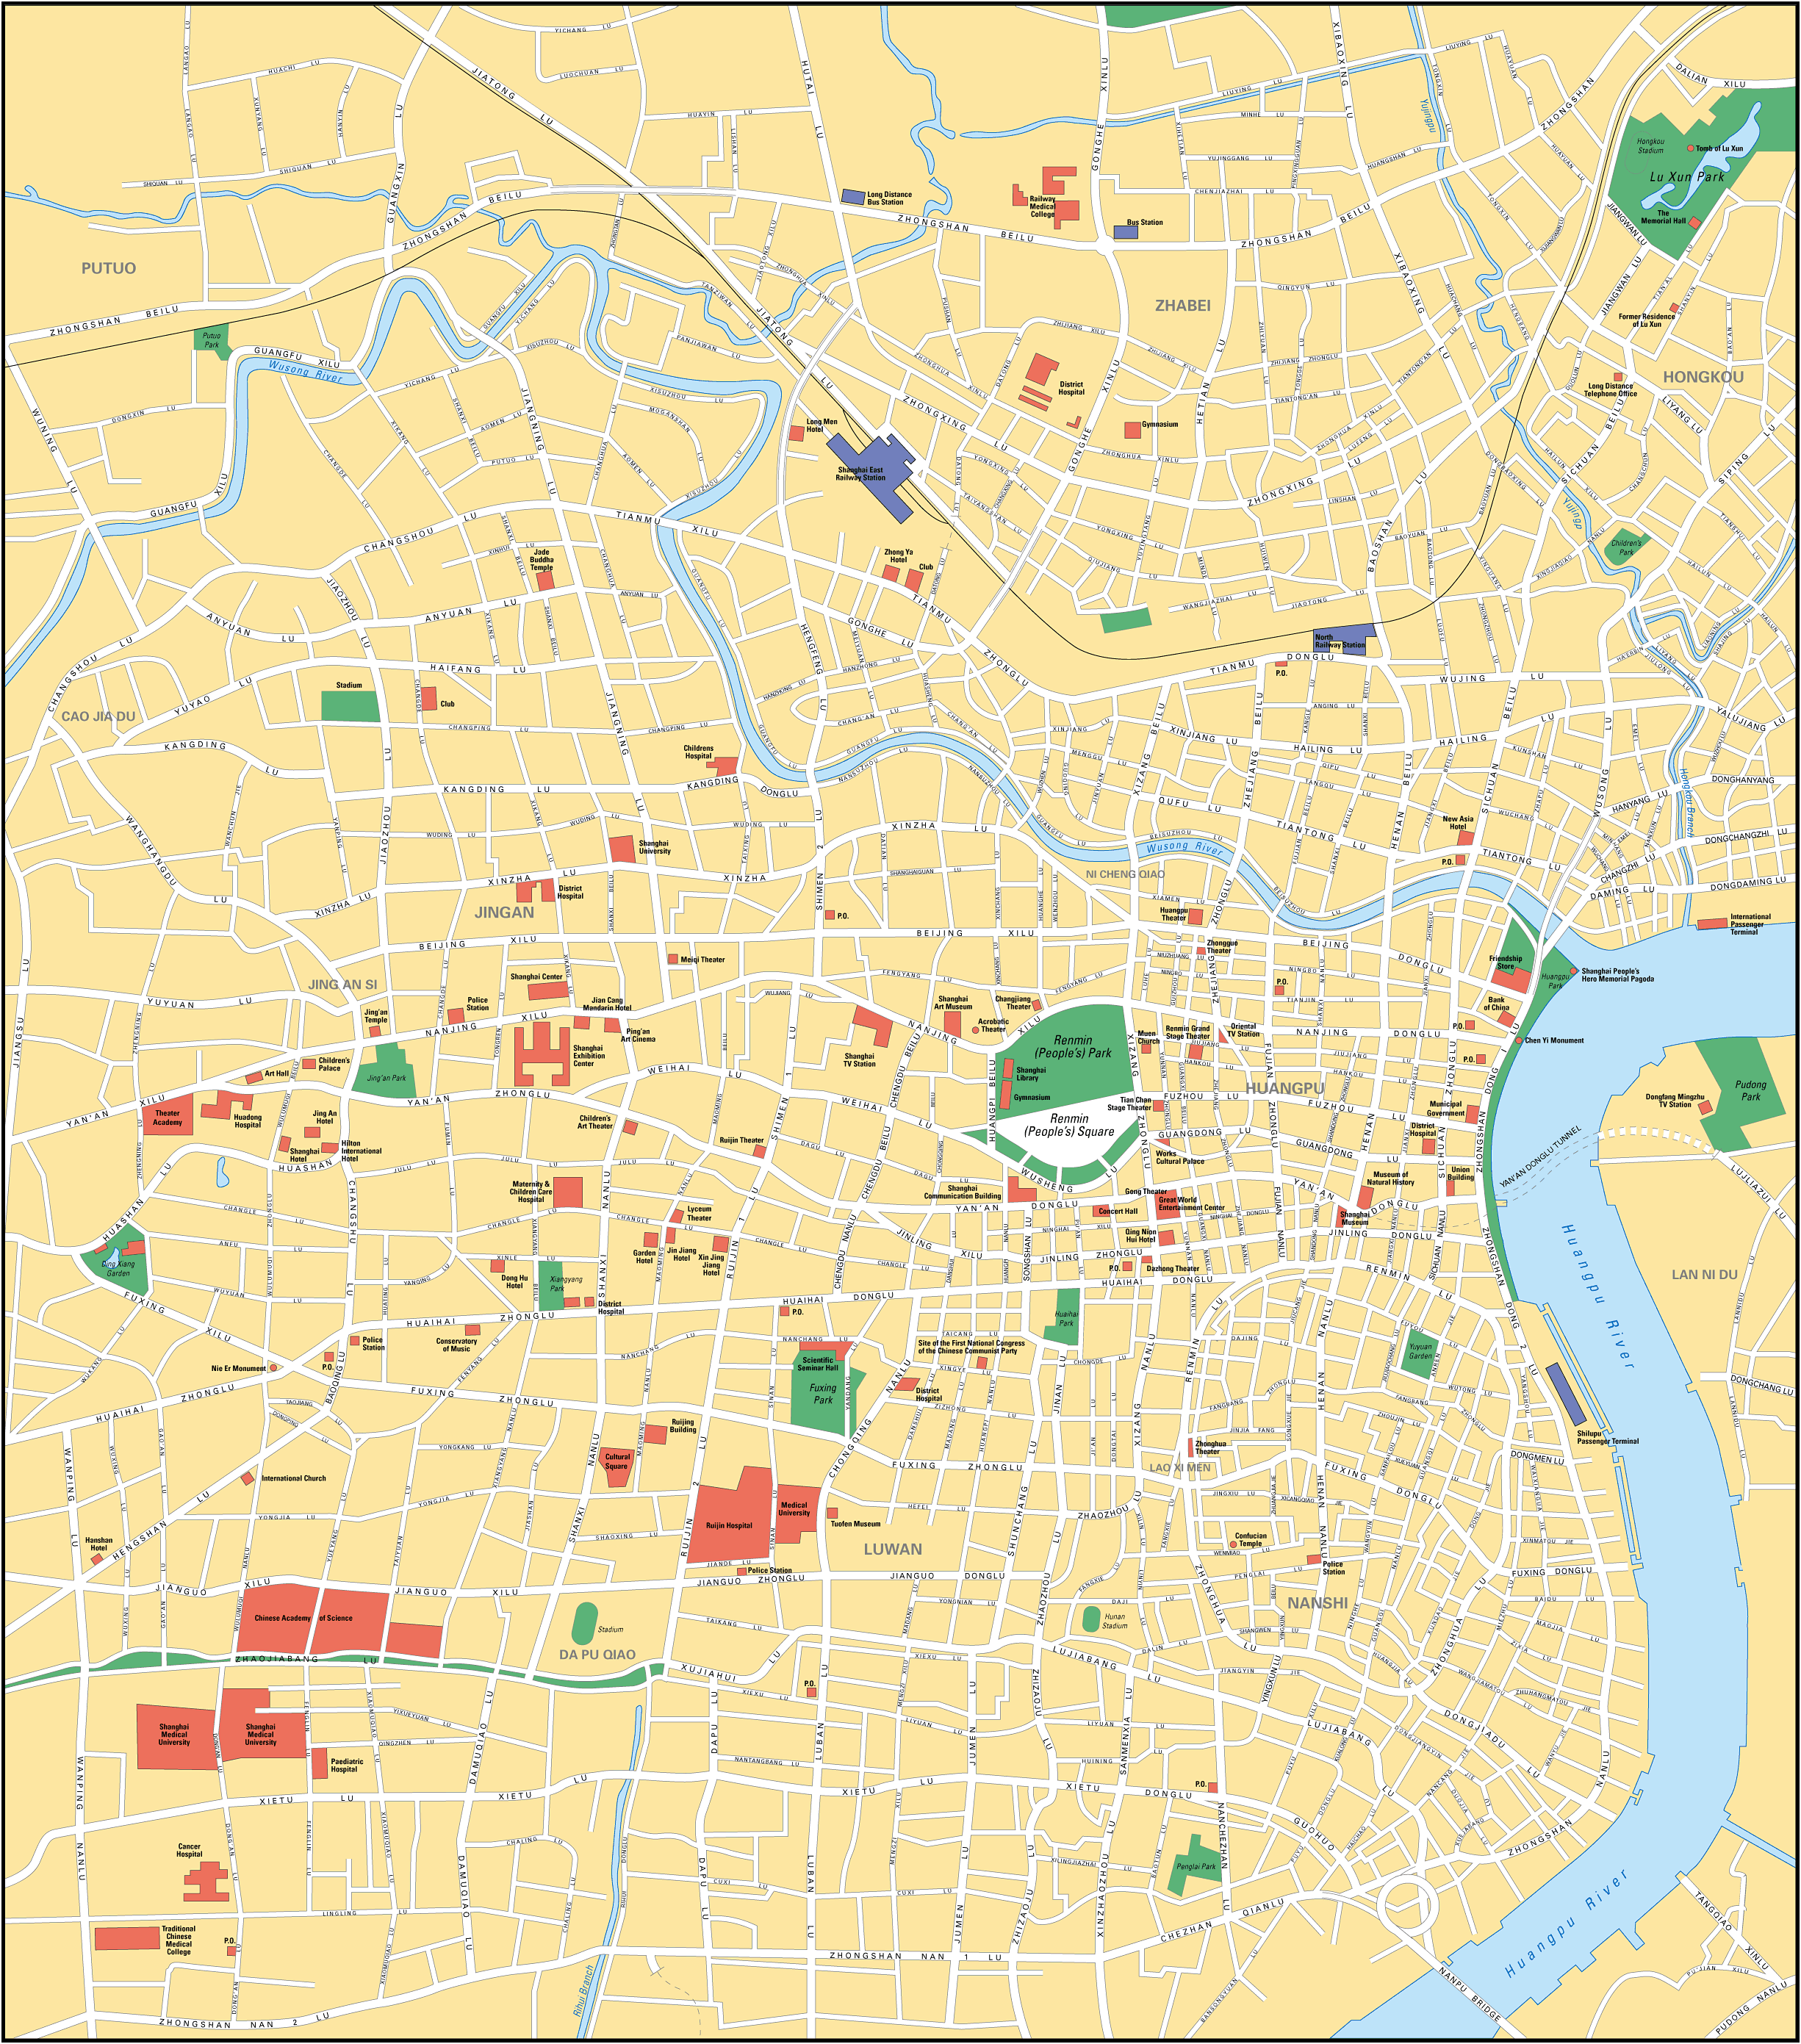 Mapa de Shanghái